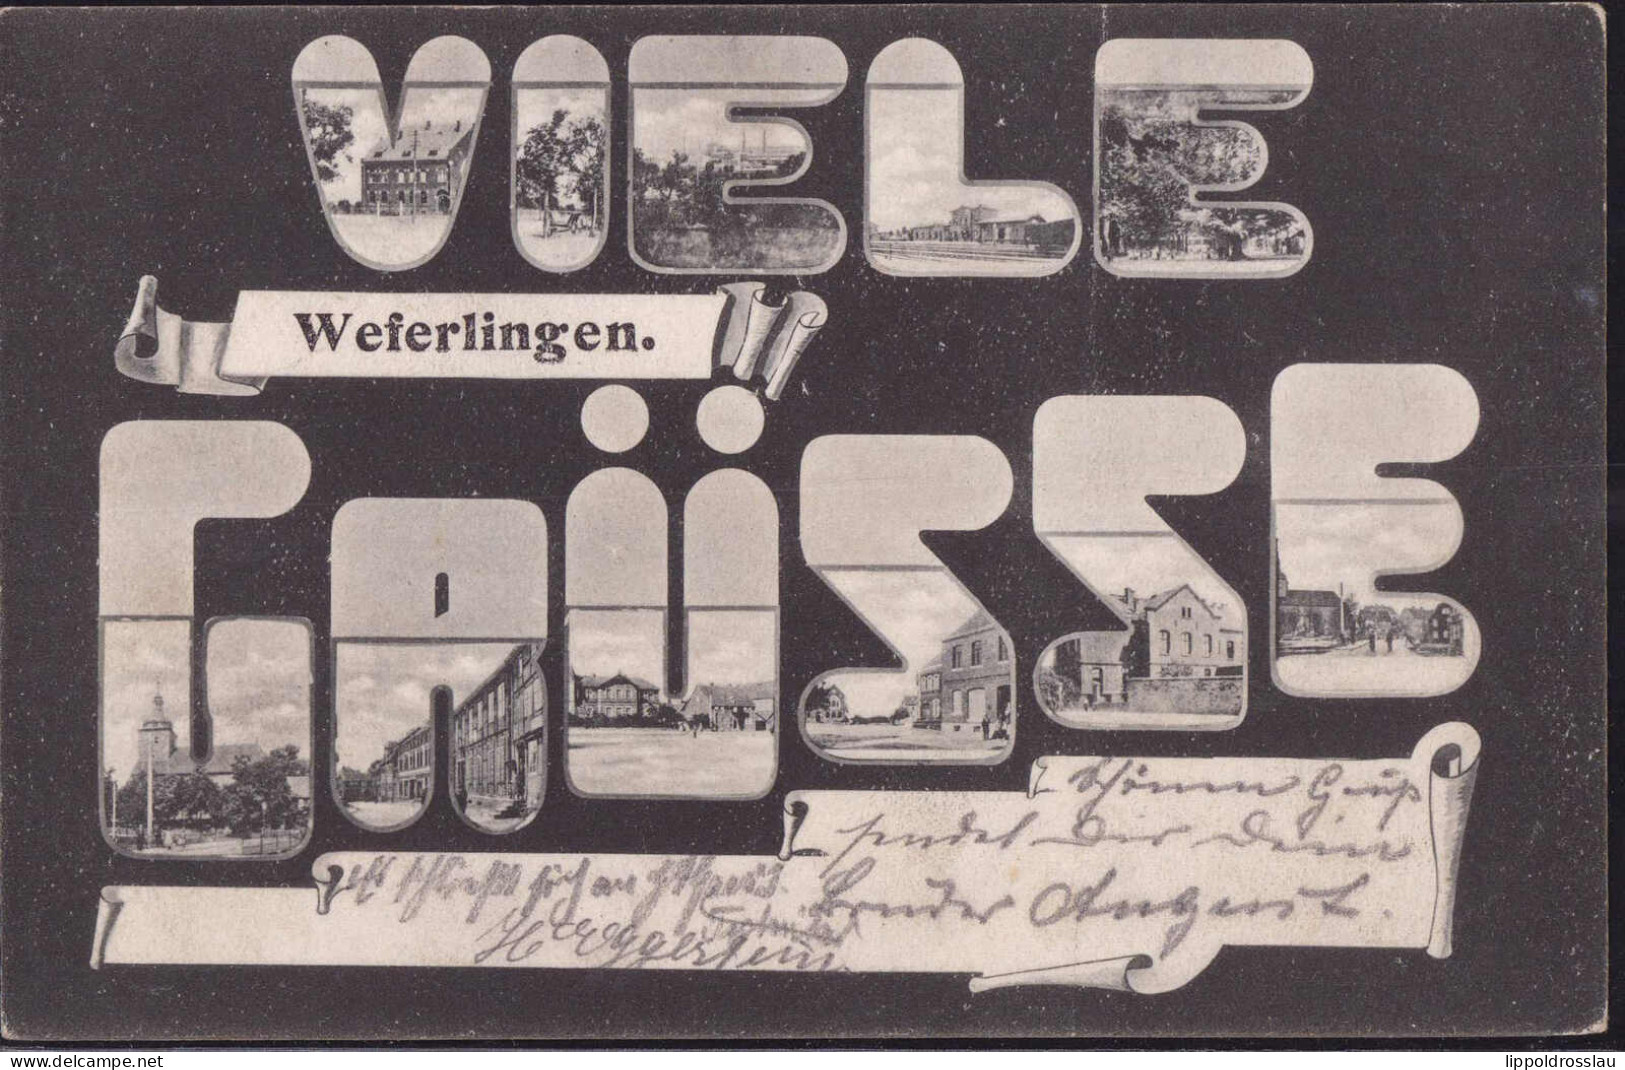 Gest. O-3243 Weferlingen Mehrbild-Grüße Soldatenpost 1905 - Haldensleben